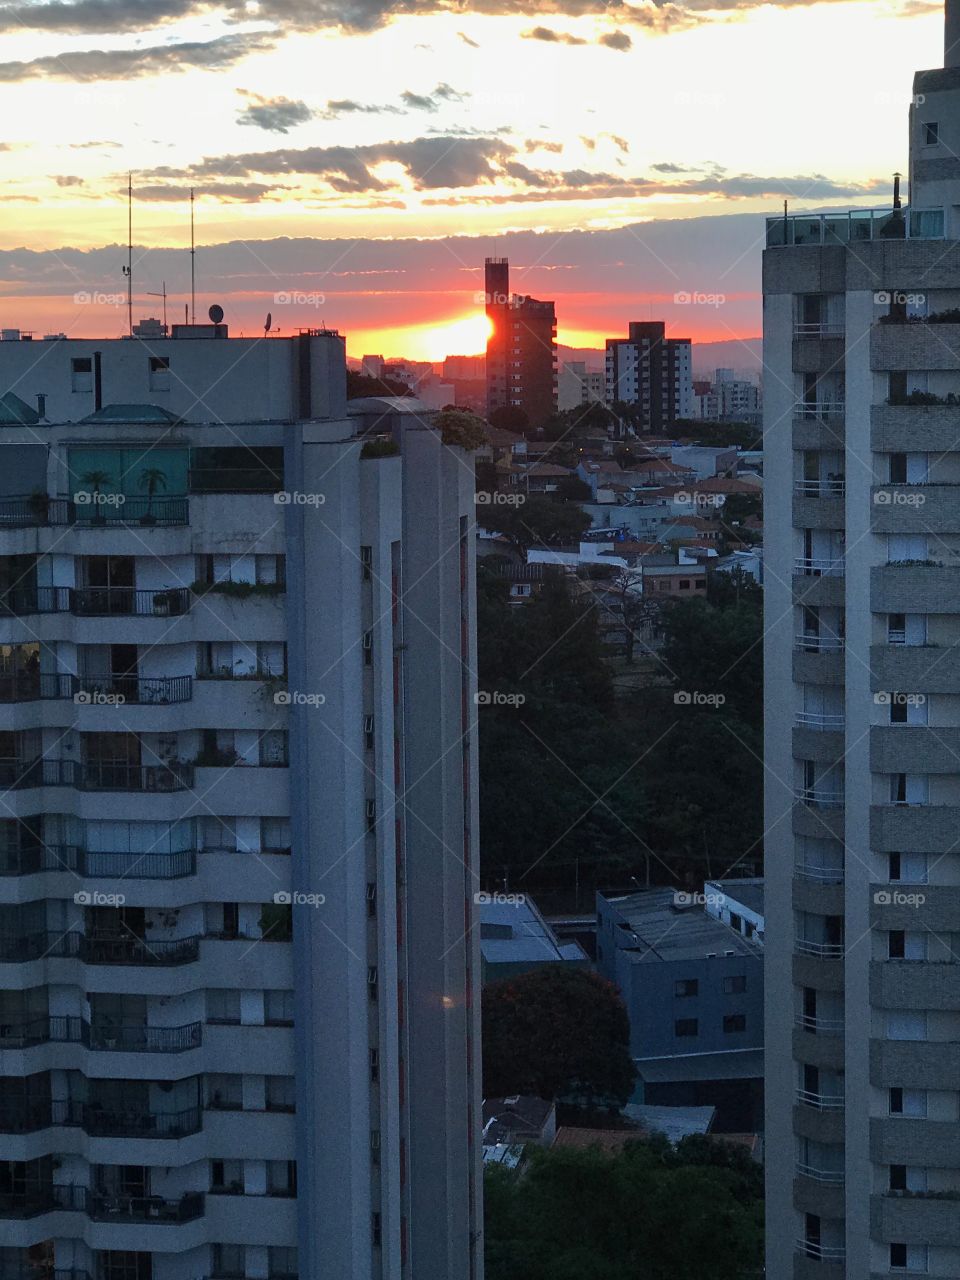 São Paulo 